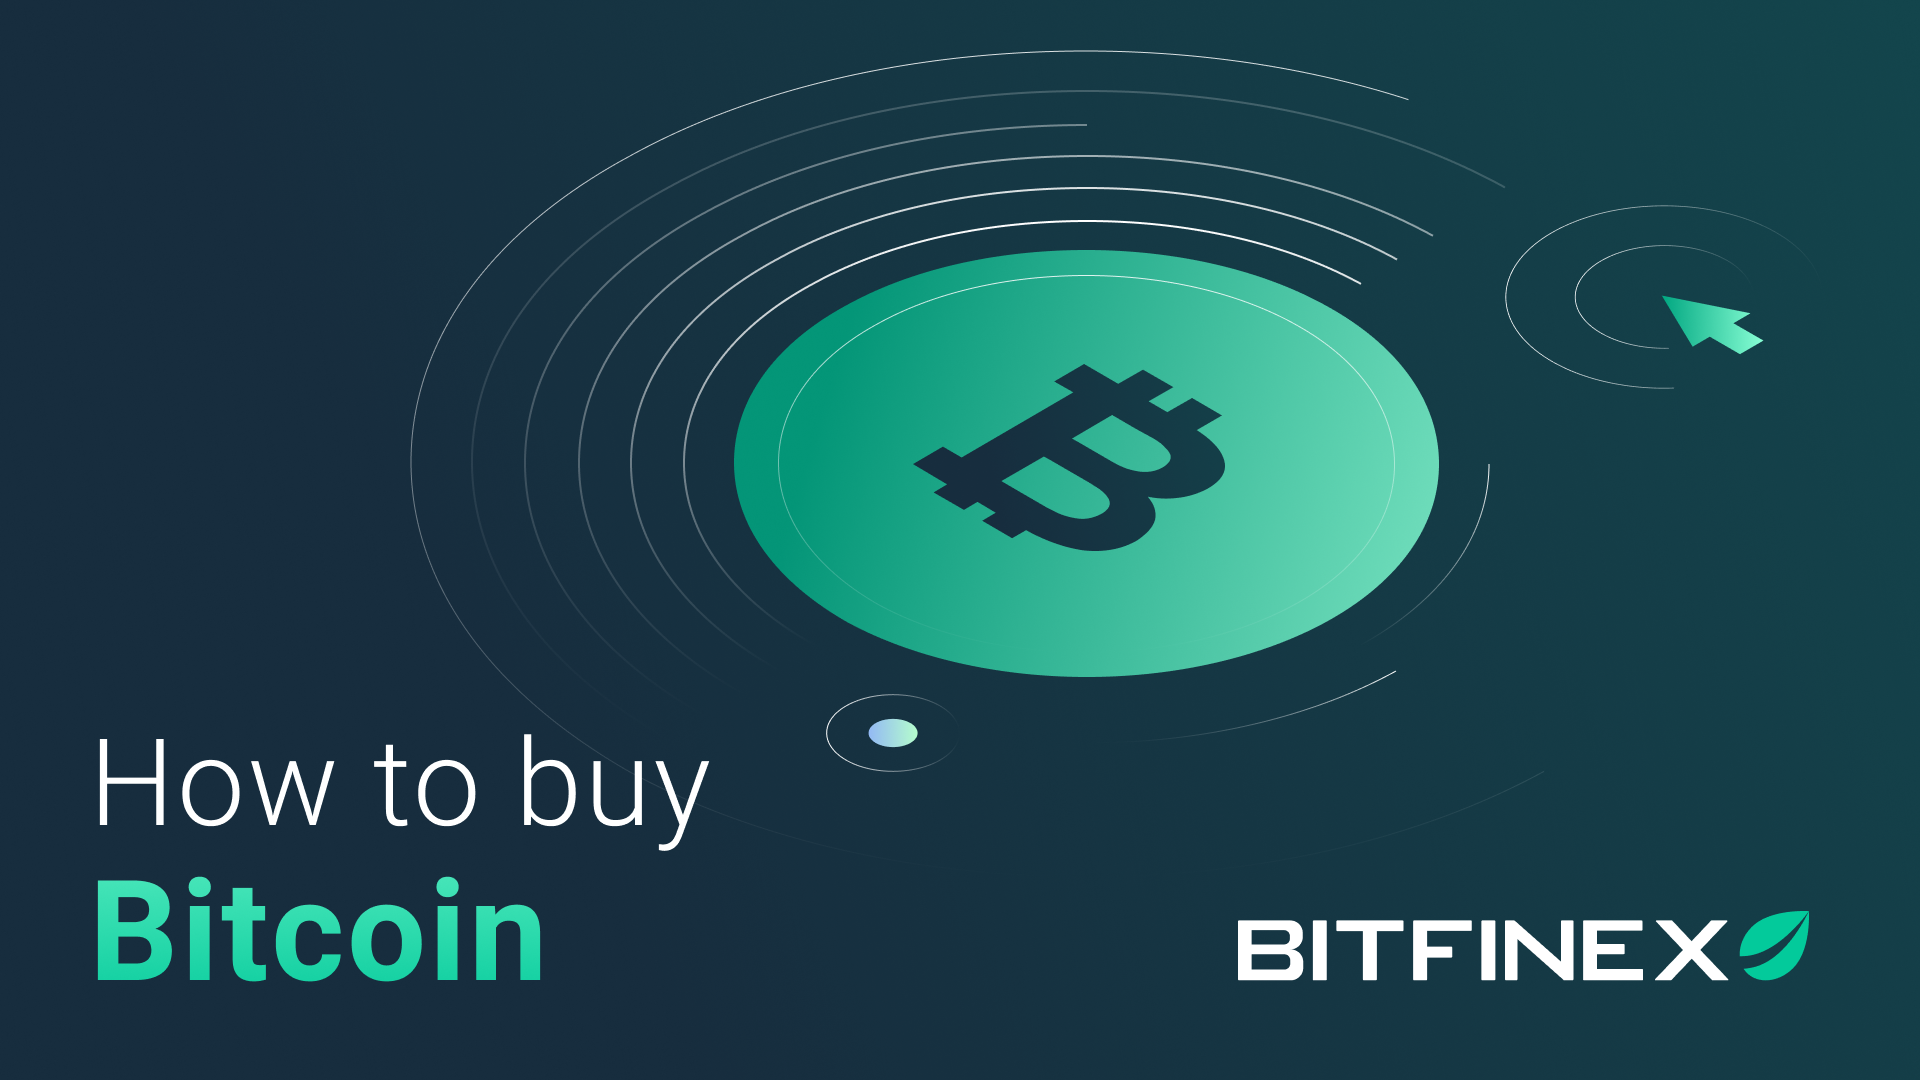 Bitcoin bitfinex kursas. Kaip padaryti daug pinigų su bitcoin. Bitcoin valiuta, kursas